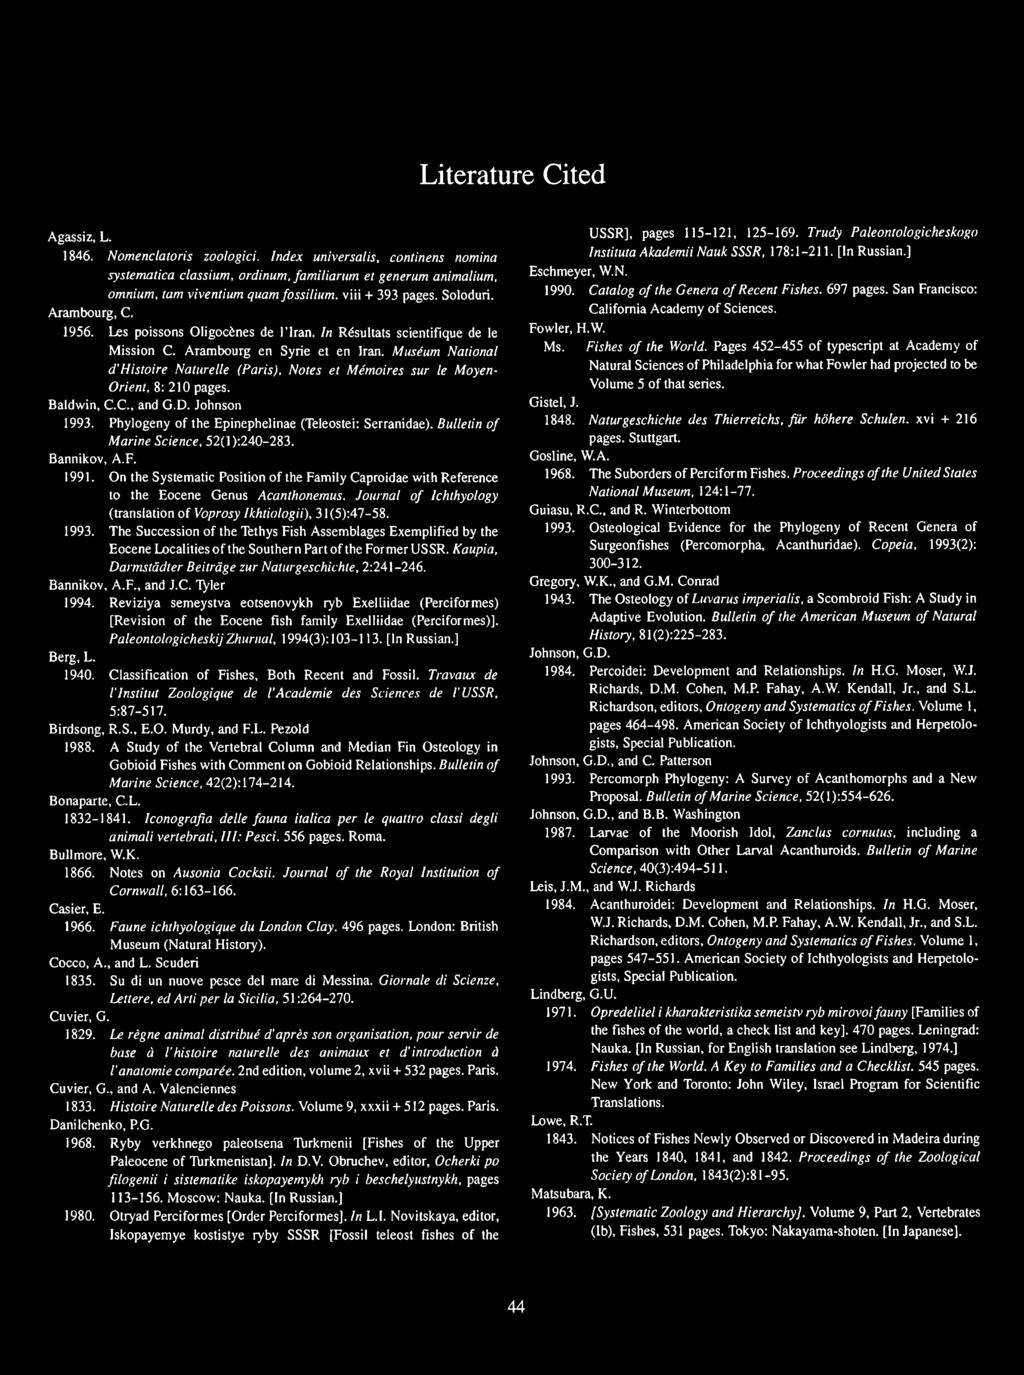 Museum National d'histoire Naturelle (Paris), Notes et Me'moires sur le Moyen- Orient, 8: 210 pages. Baldwin, C.C., and G.D. Johnson 1993. Phylogeny of the Epinephelinae (Teleostei: Serranidae).